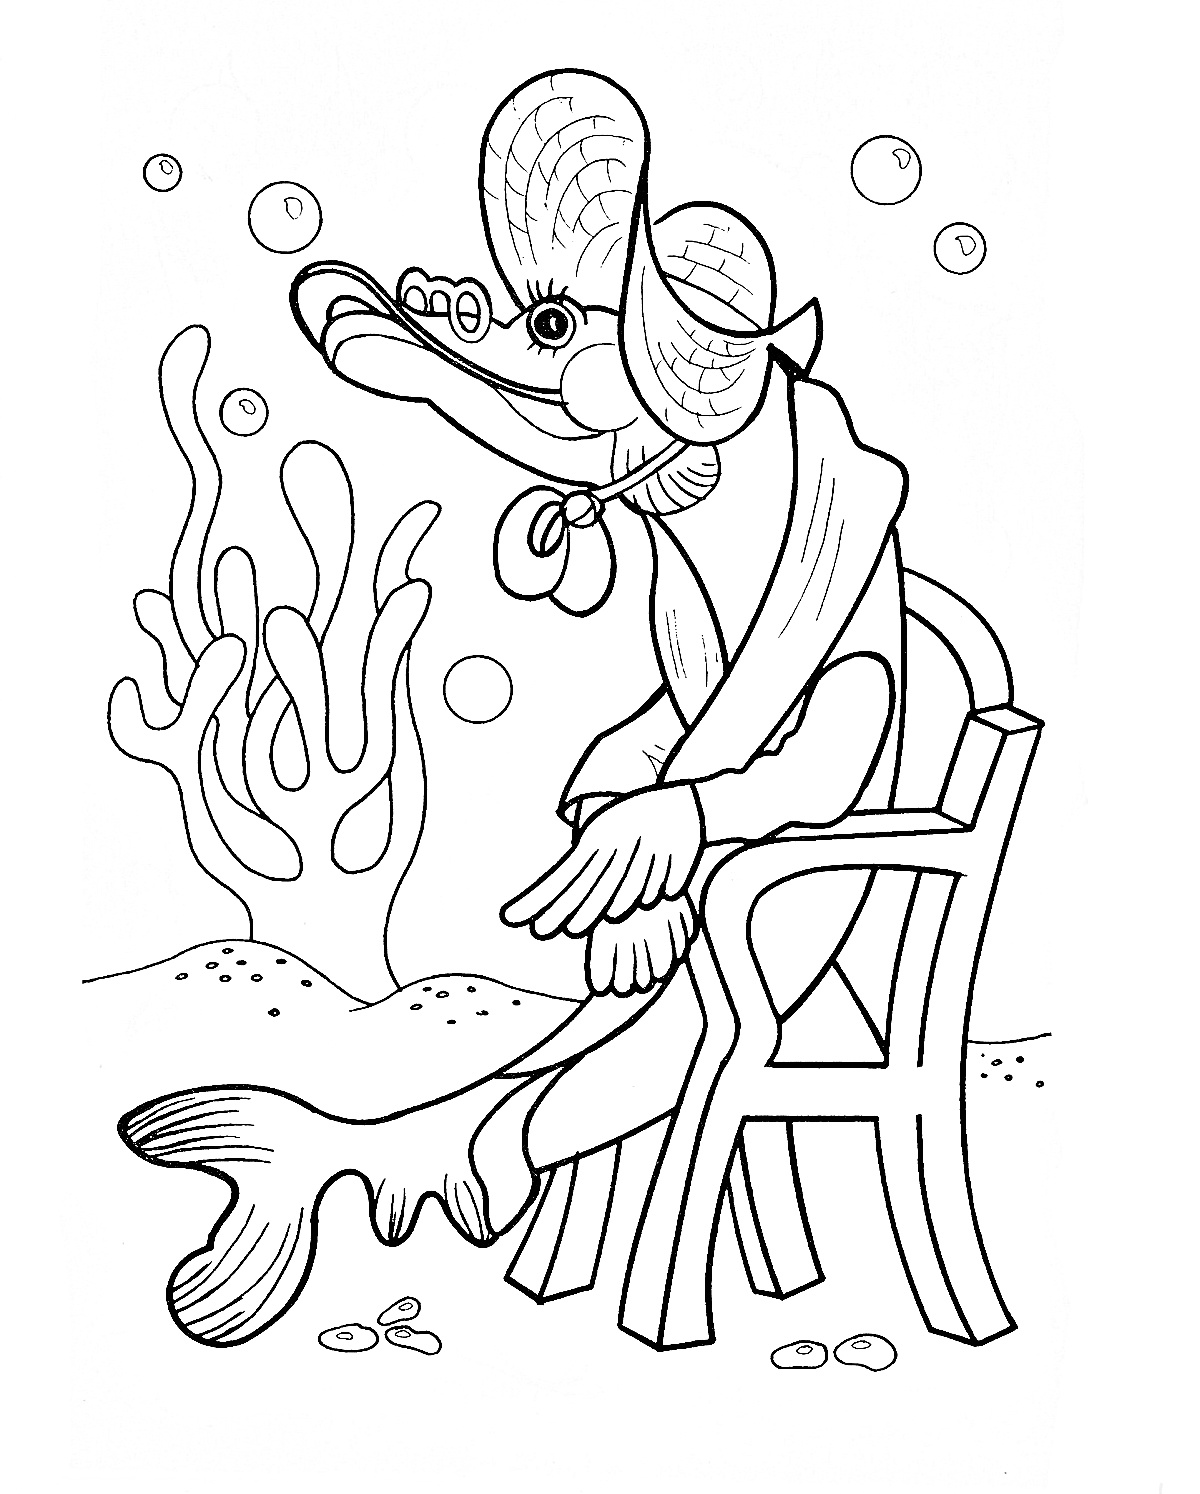 Раскраска Щука в одежде и шляпе, сидящая на стуле под водой с водорослями и пузырьками